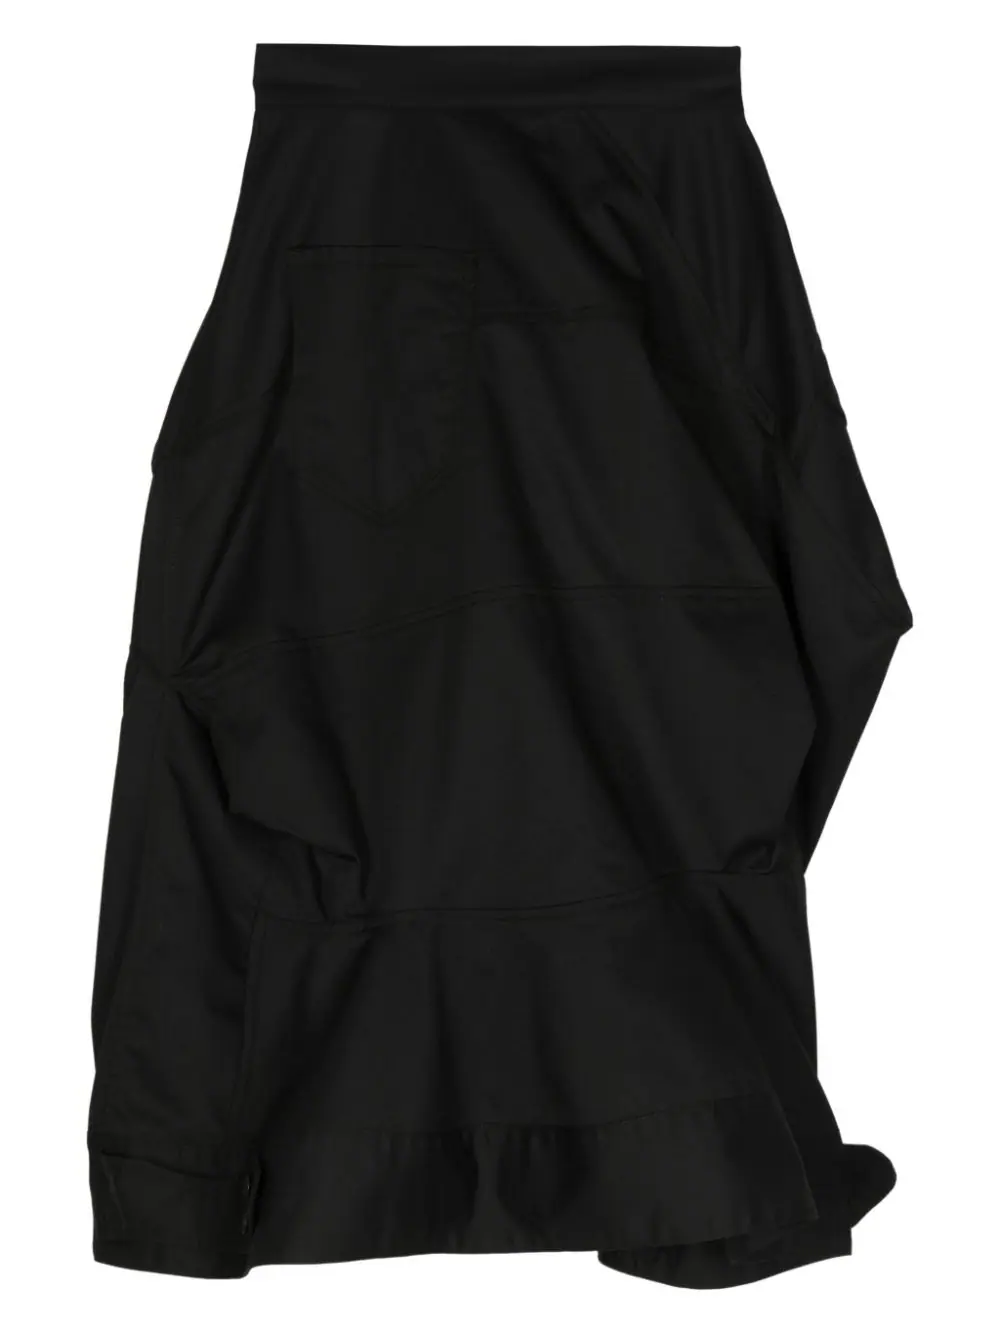 MELITTA BAUMEISTER Women Utility Skirt